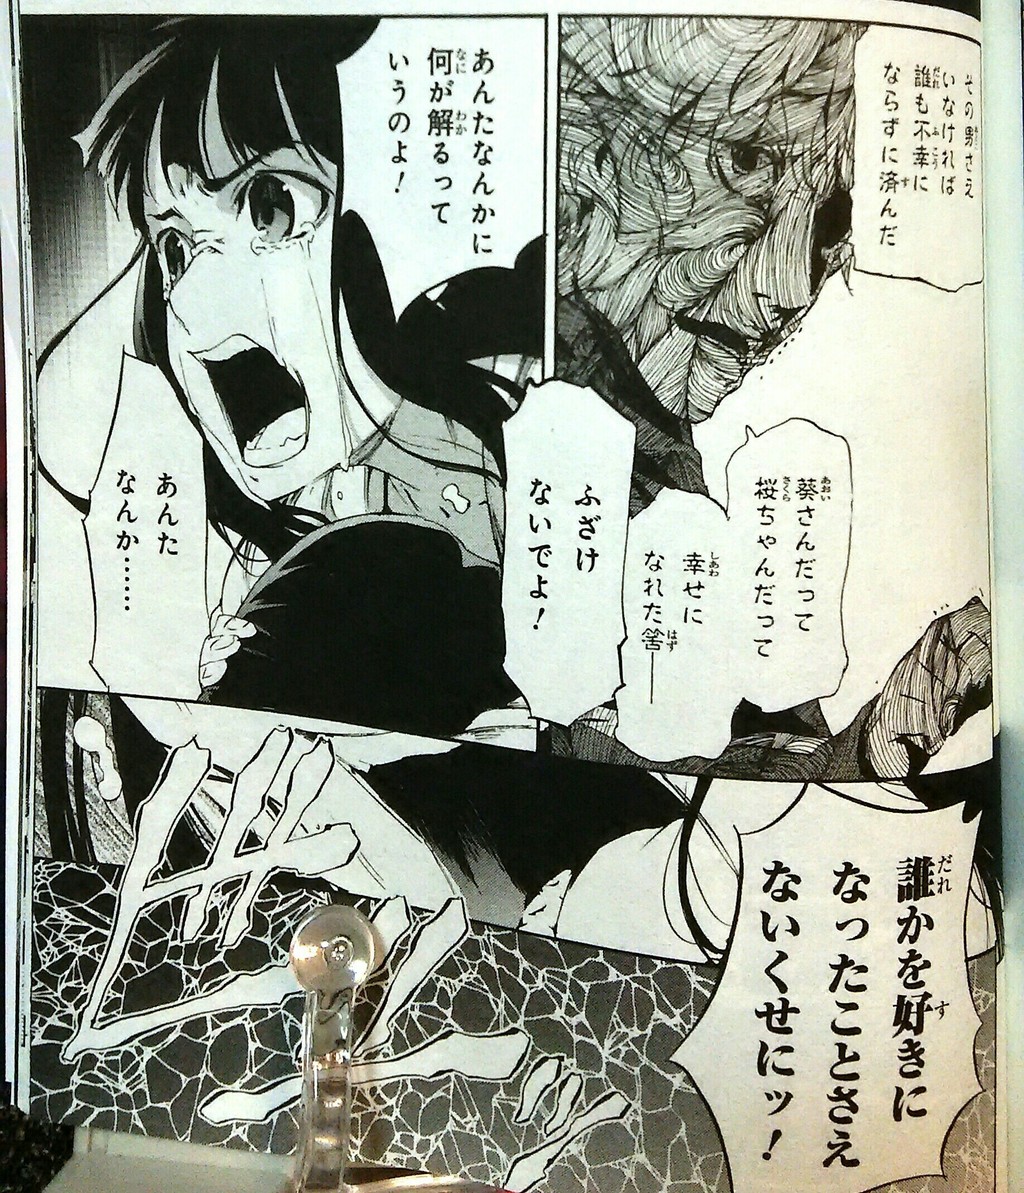 漫画版 Fate Zero 11巻 空の境界 5巻感想 型月コミカライズ群佳境に発つ ドントライフ